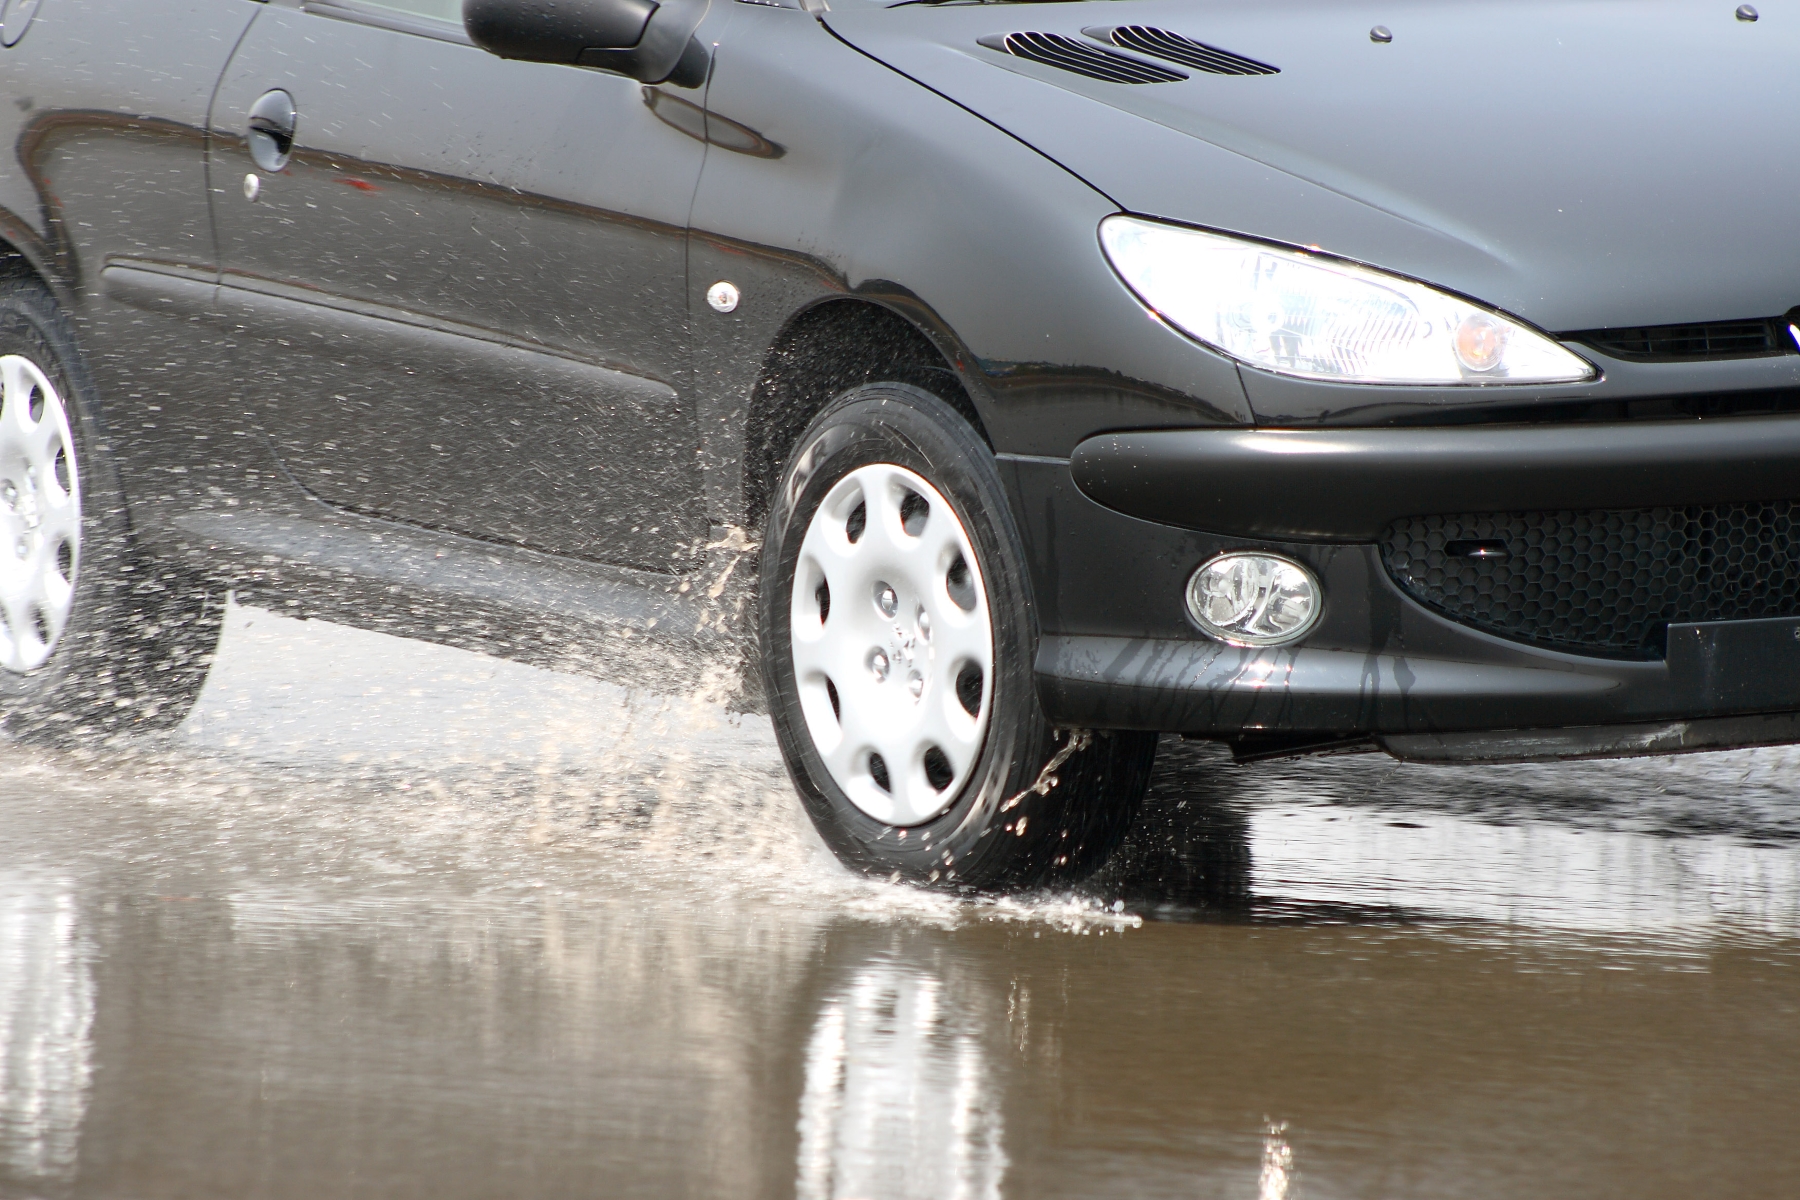 aquaplanagem pneus trafegando sobre pista molhada com spray de agua no asfalto